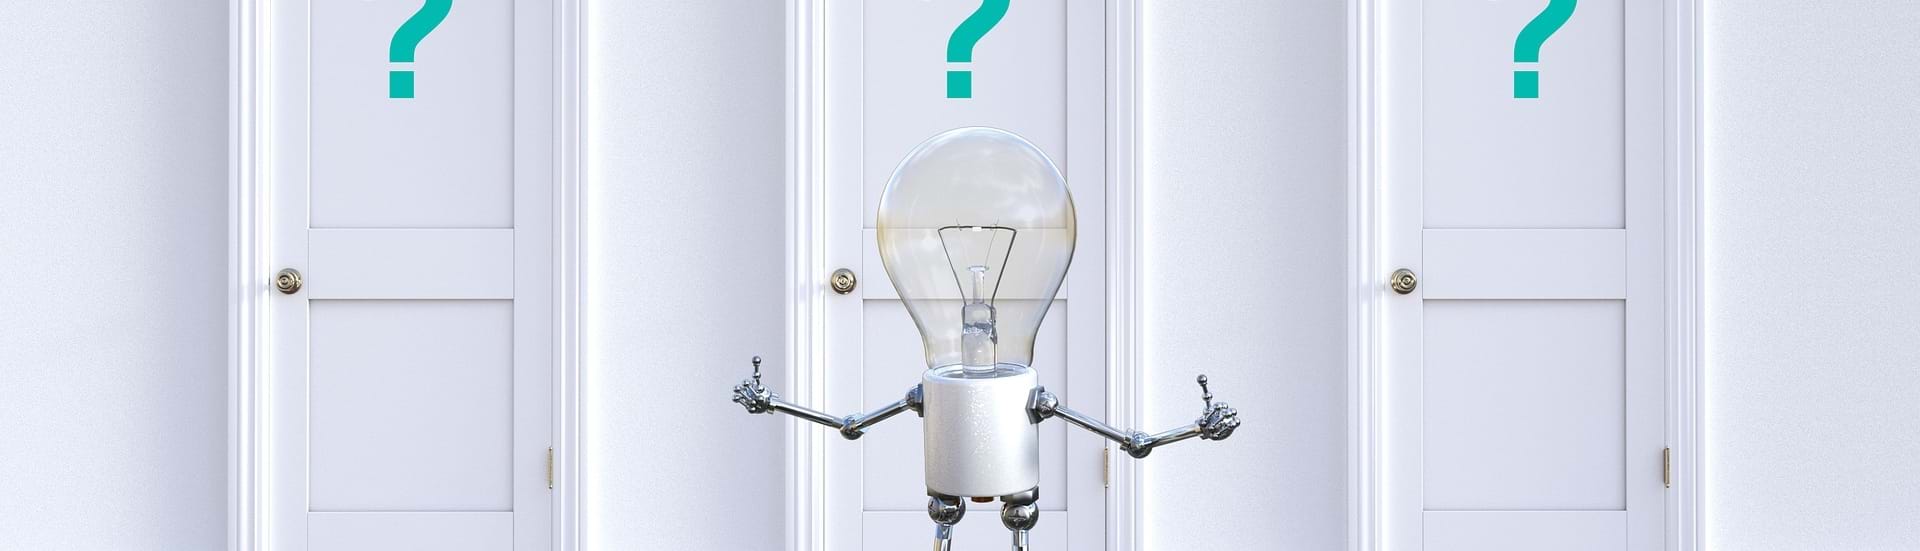 En lille robot med elpære som hoved, står foran tre døre med spørgsmålstegn på.